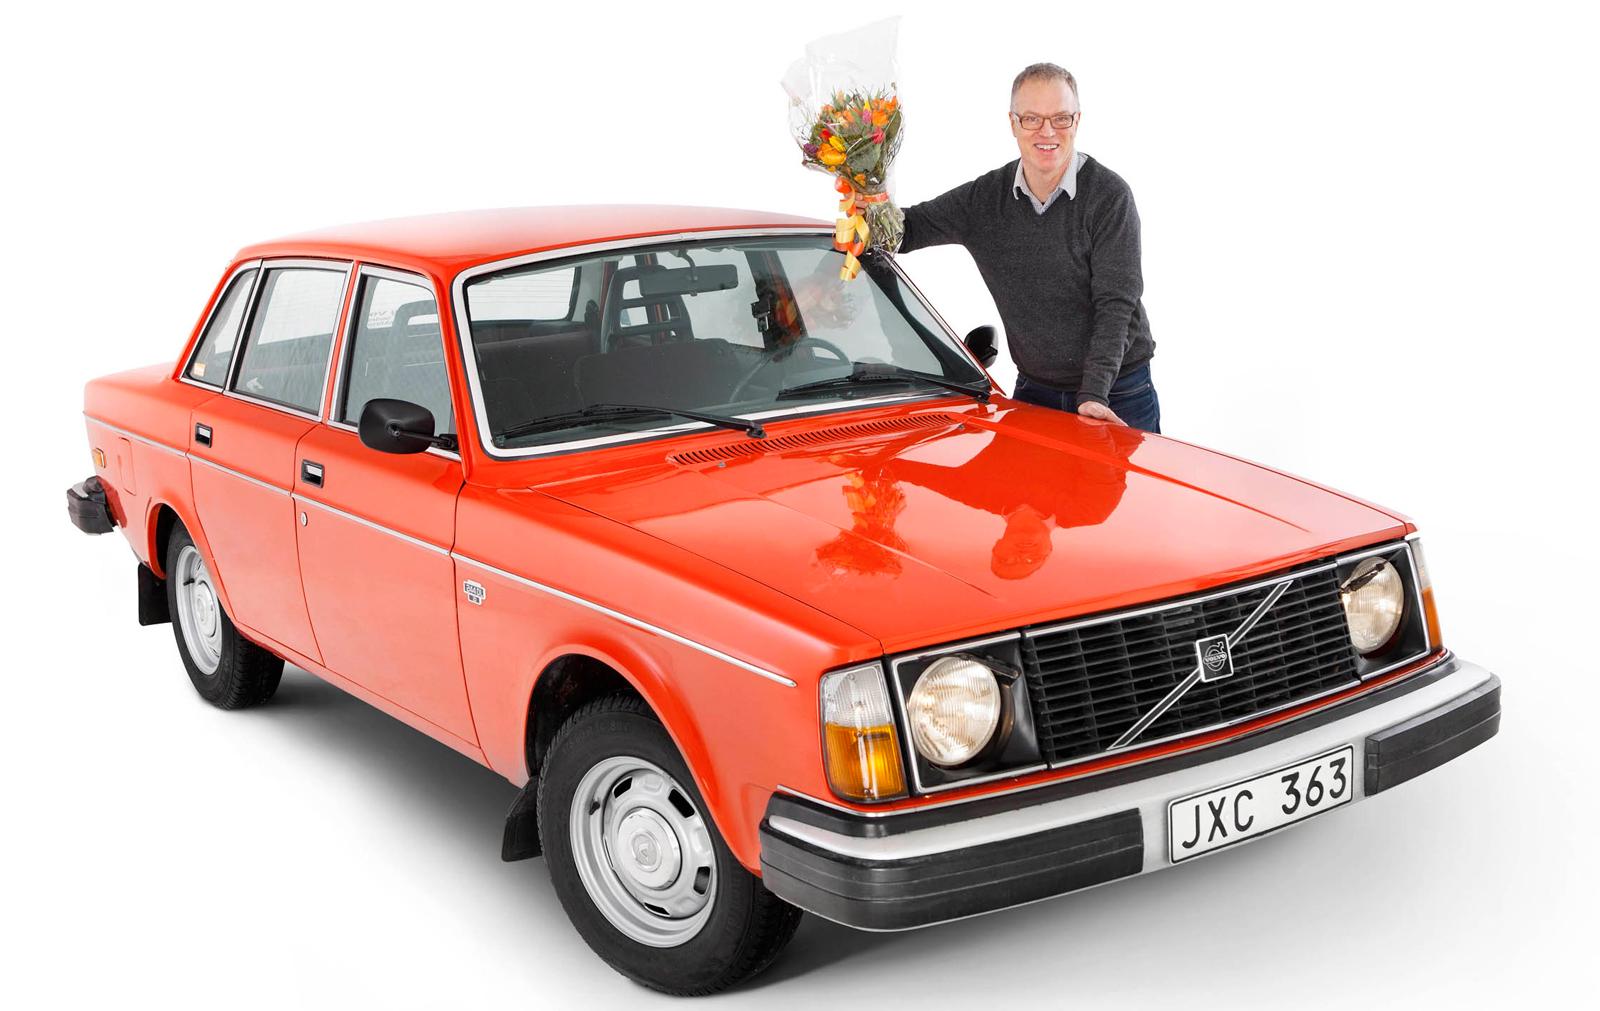 Johan Falck från Uppsala är ägare till den Volvo 244 DL 1978 som utsetts till Årets Klassiker av Klassikers läsare. Foto: Simon Hamelius